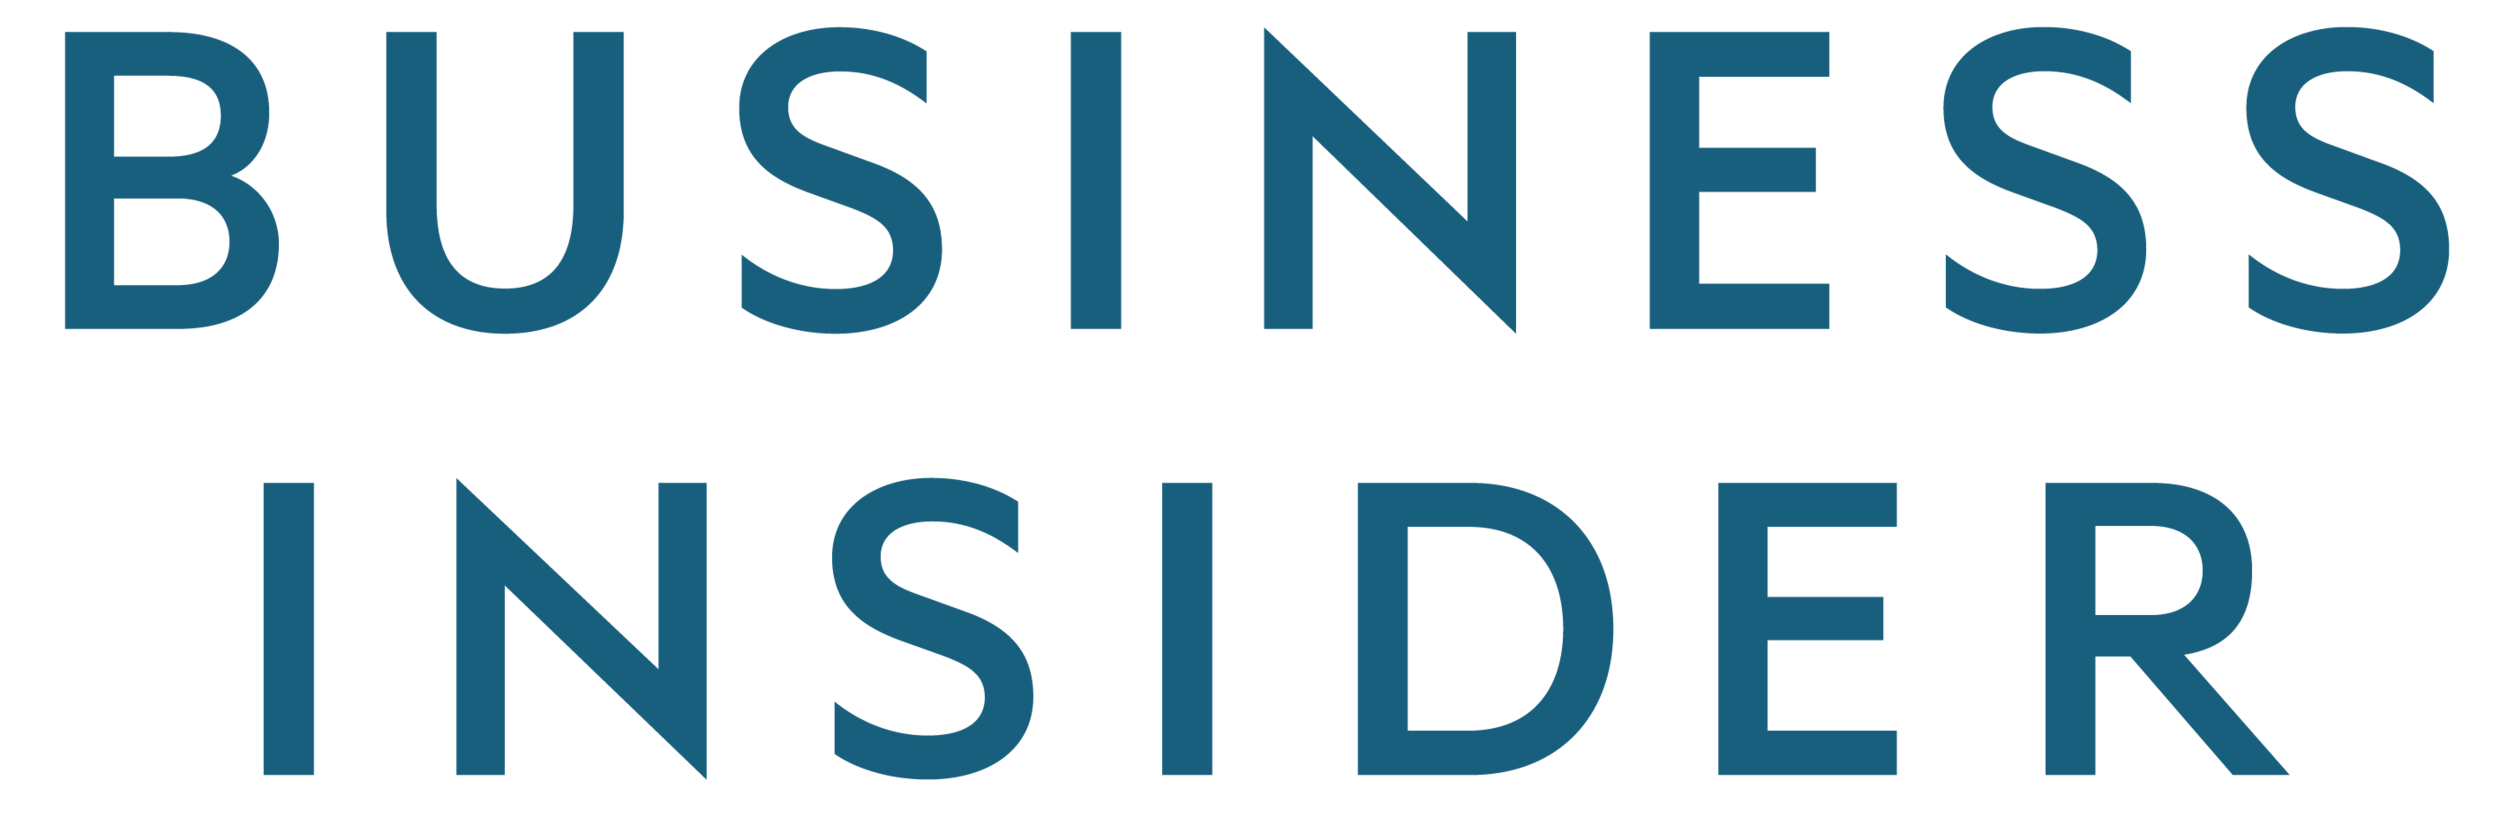 Business Insider 2 logo.png